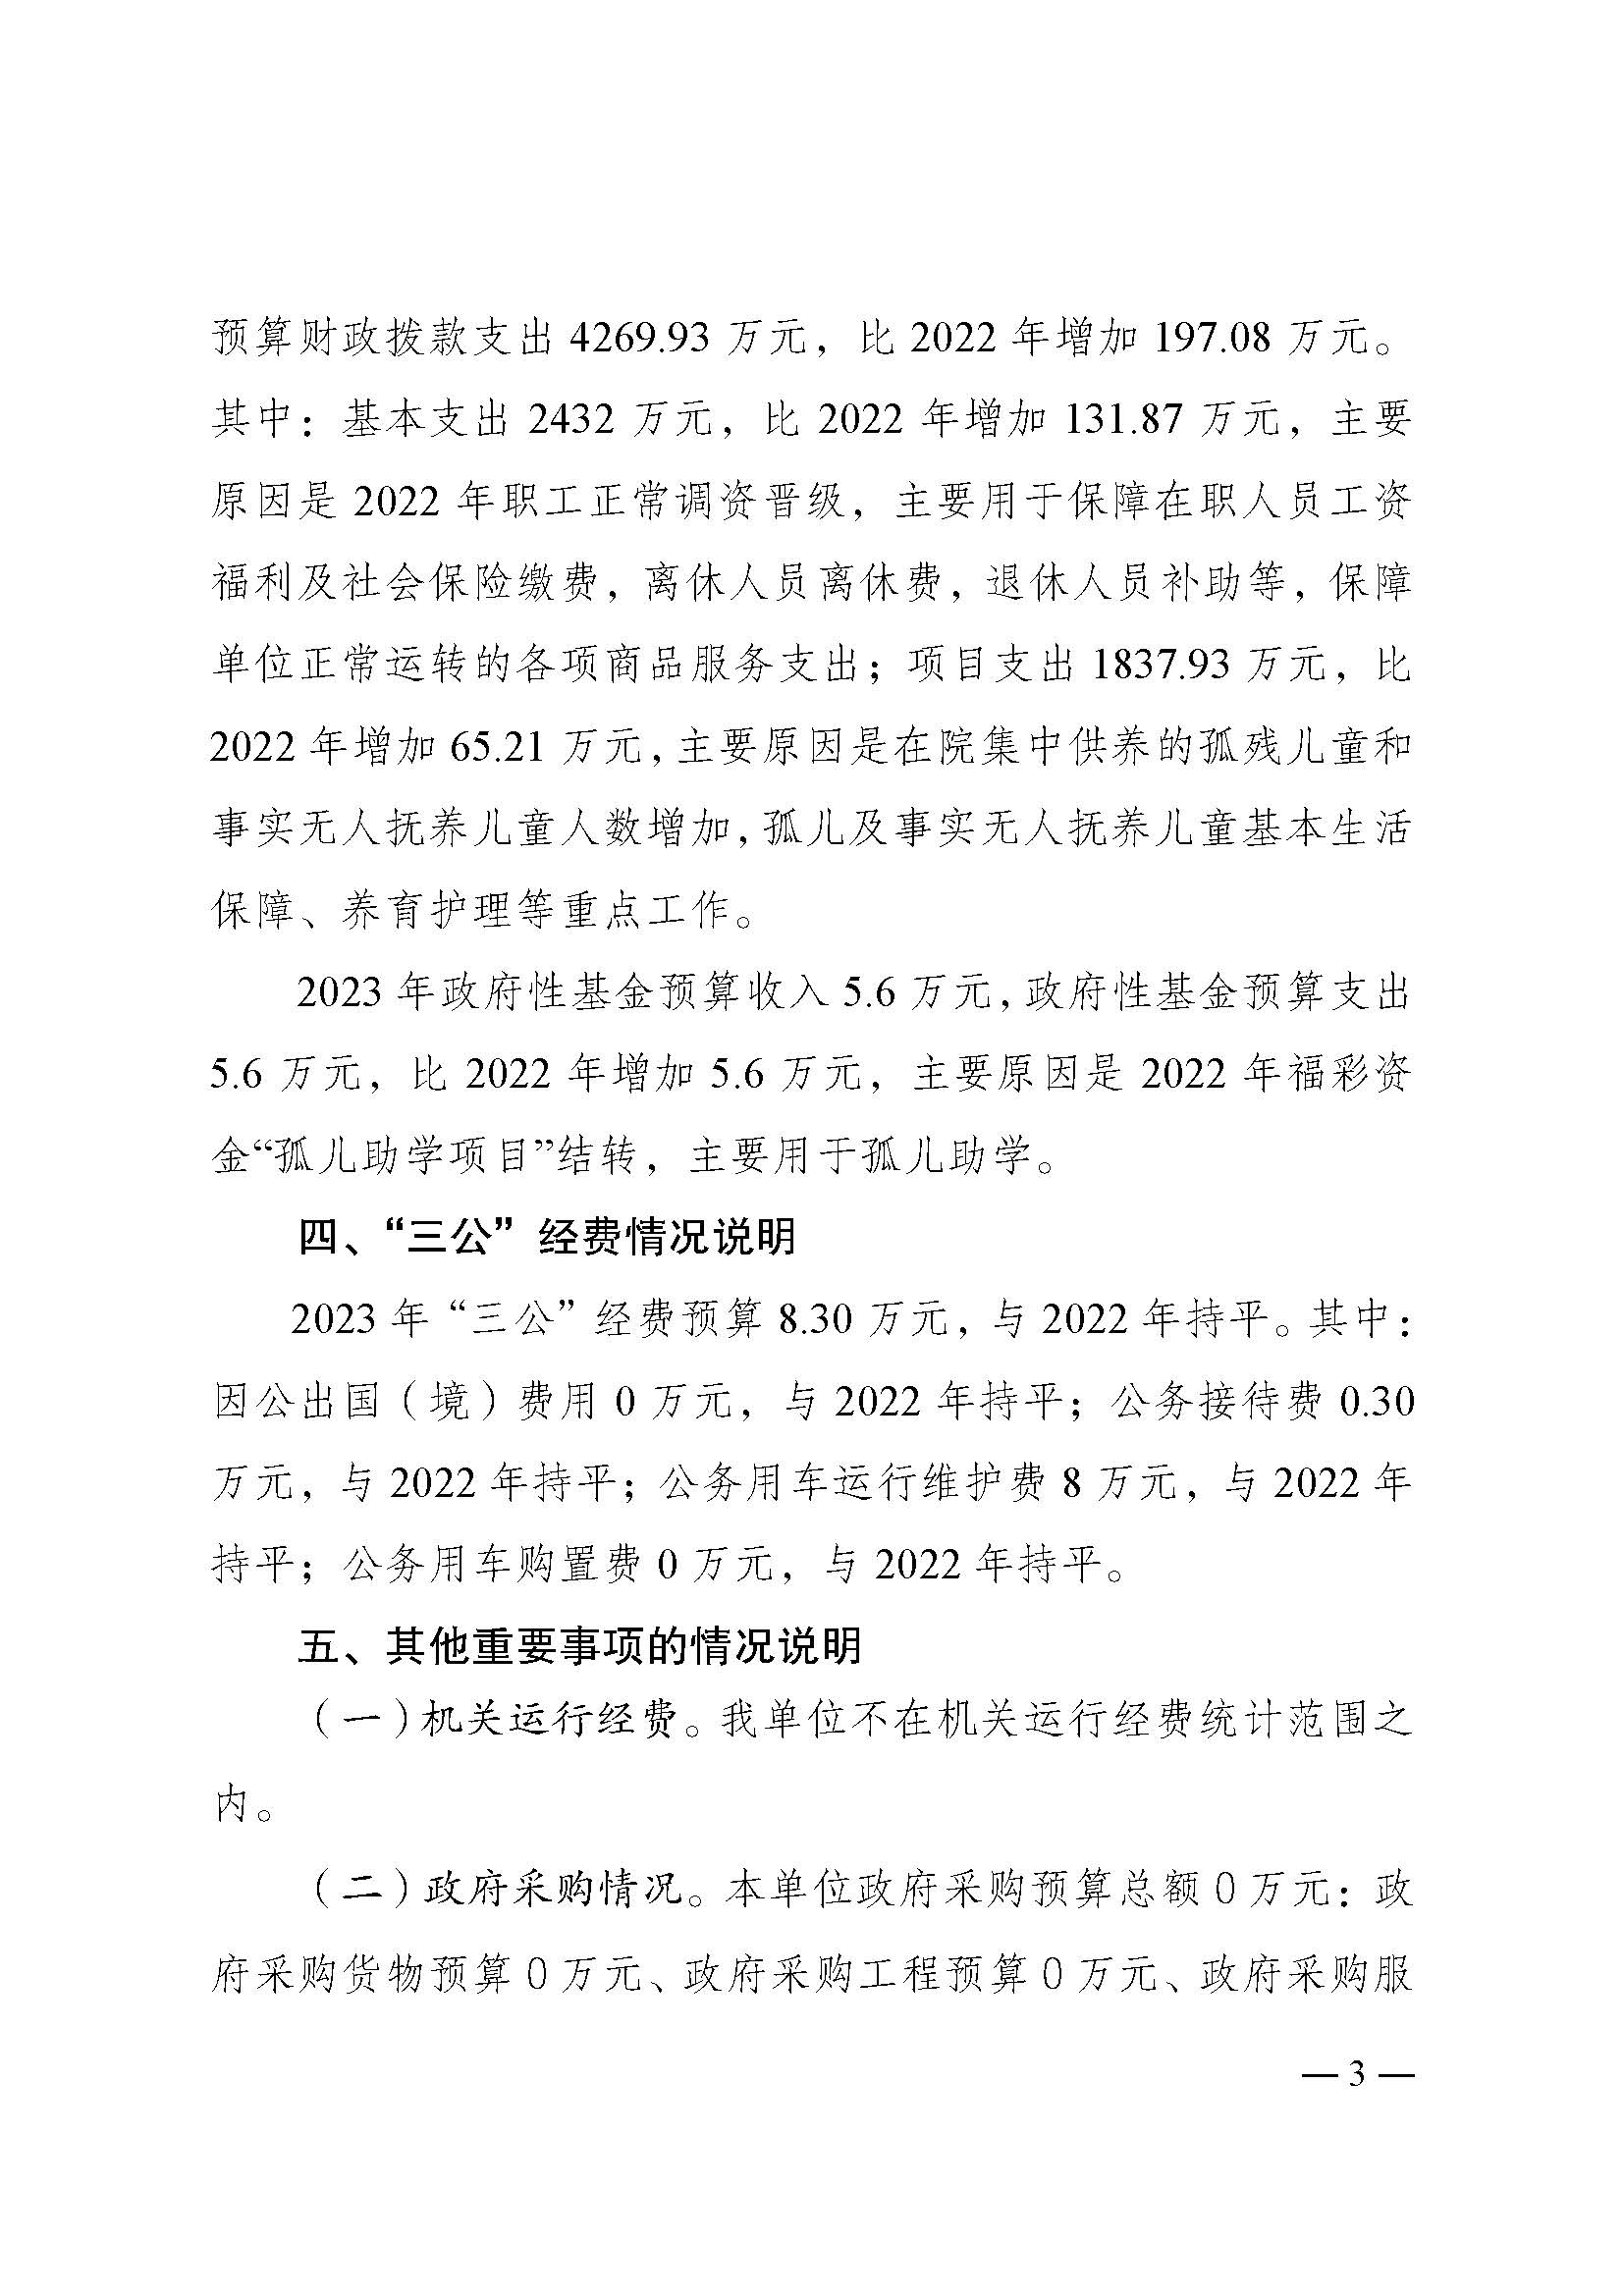 2023年单位预算公开说明（重庆市儿童福利院）_页面_3.jpg